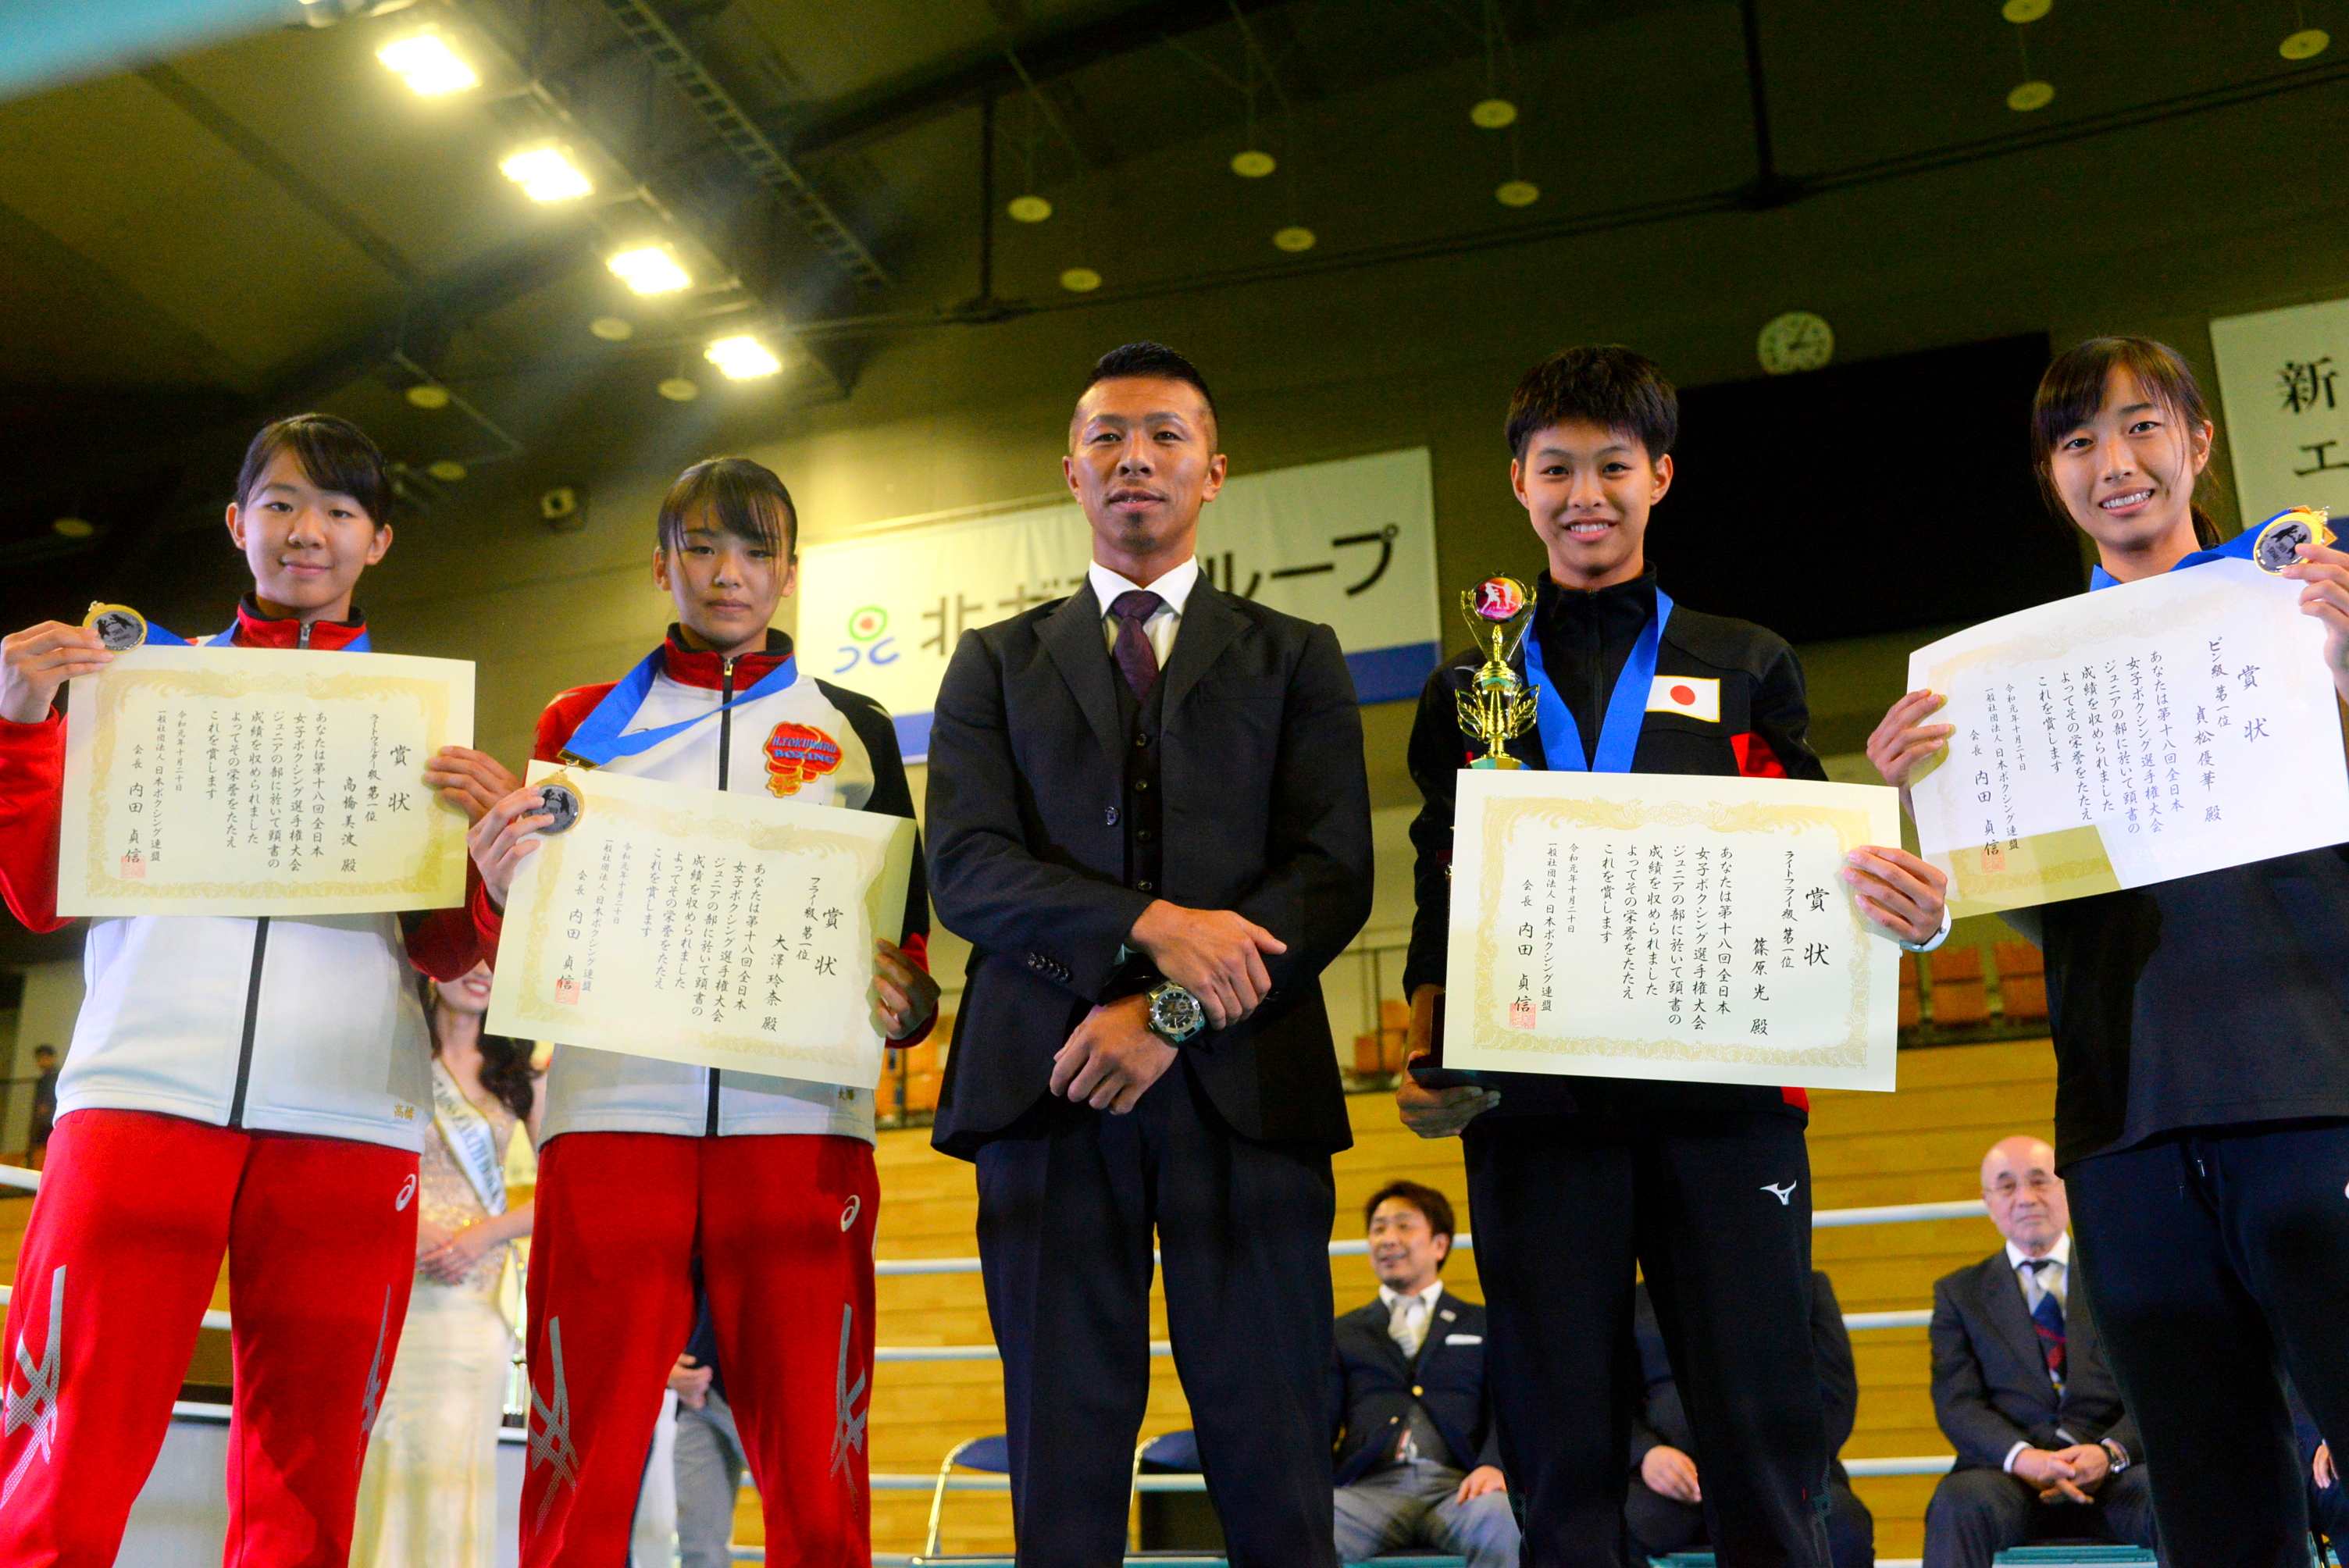 全日本女子選手権 ジュニアは篠原光 シニアは晝田瑞希が最優秀賞 日本ボクシング連盟